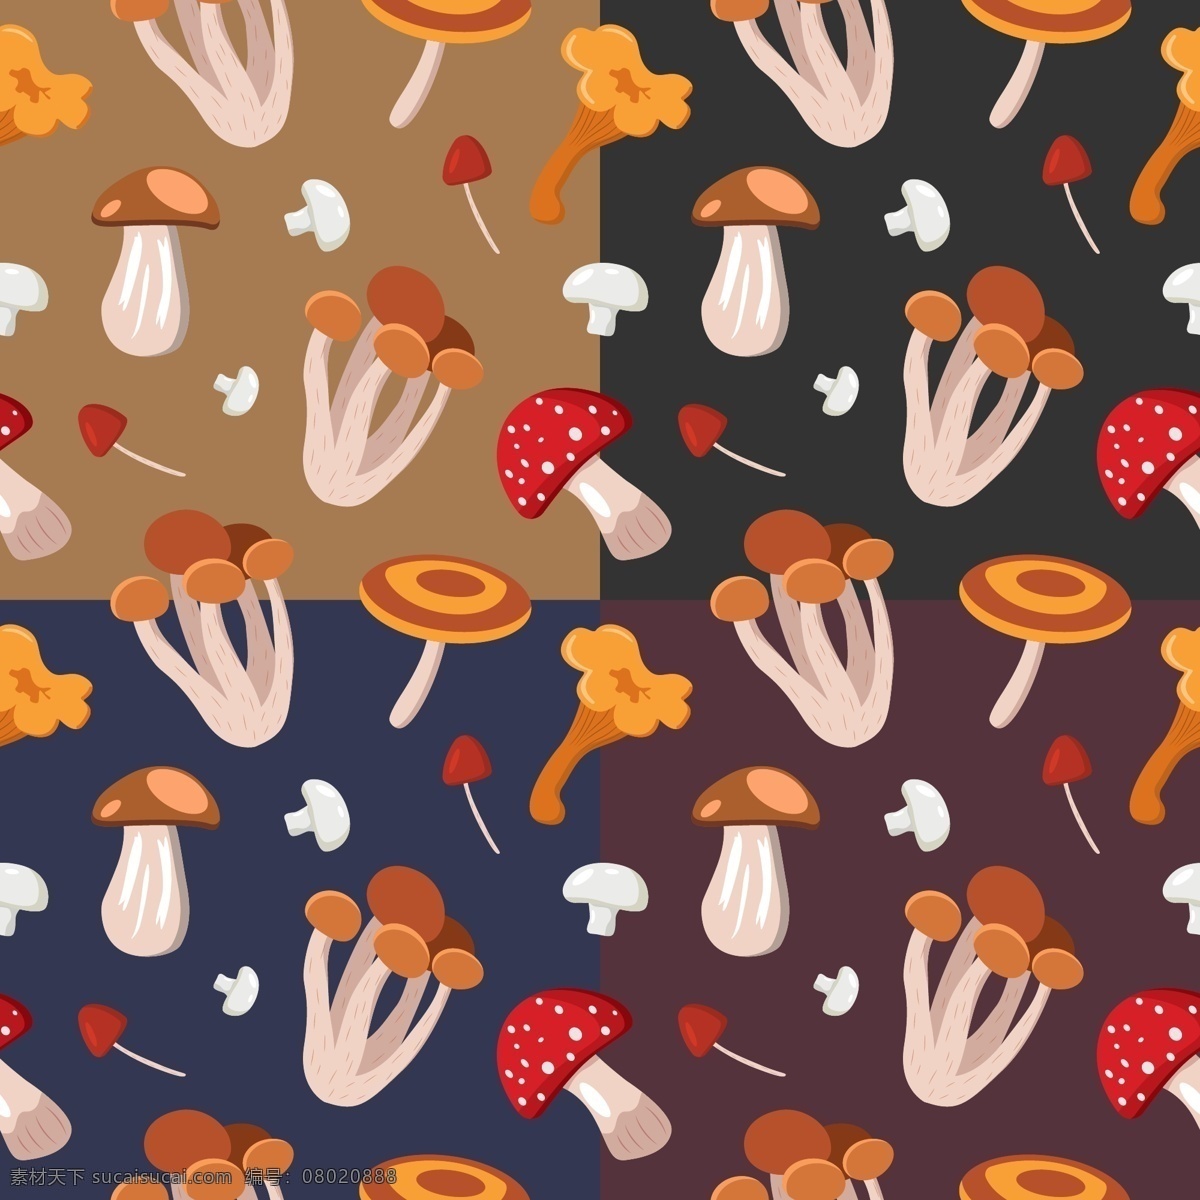 蘑菇 无缝 图案 背景 矢量蘑菇 卡通蘑菇 彩色蘑菇 手绘蘑菇 蘑菇背景 蘑菇底纹 蘑菇图案 食物 生物世界 蔬菜